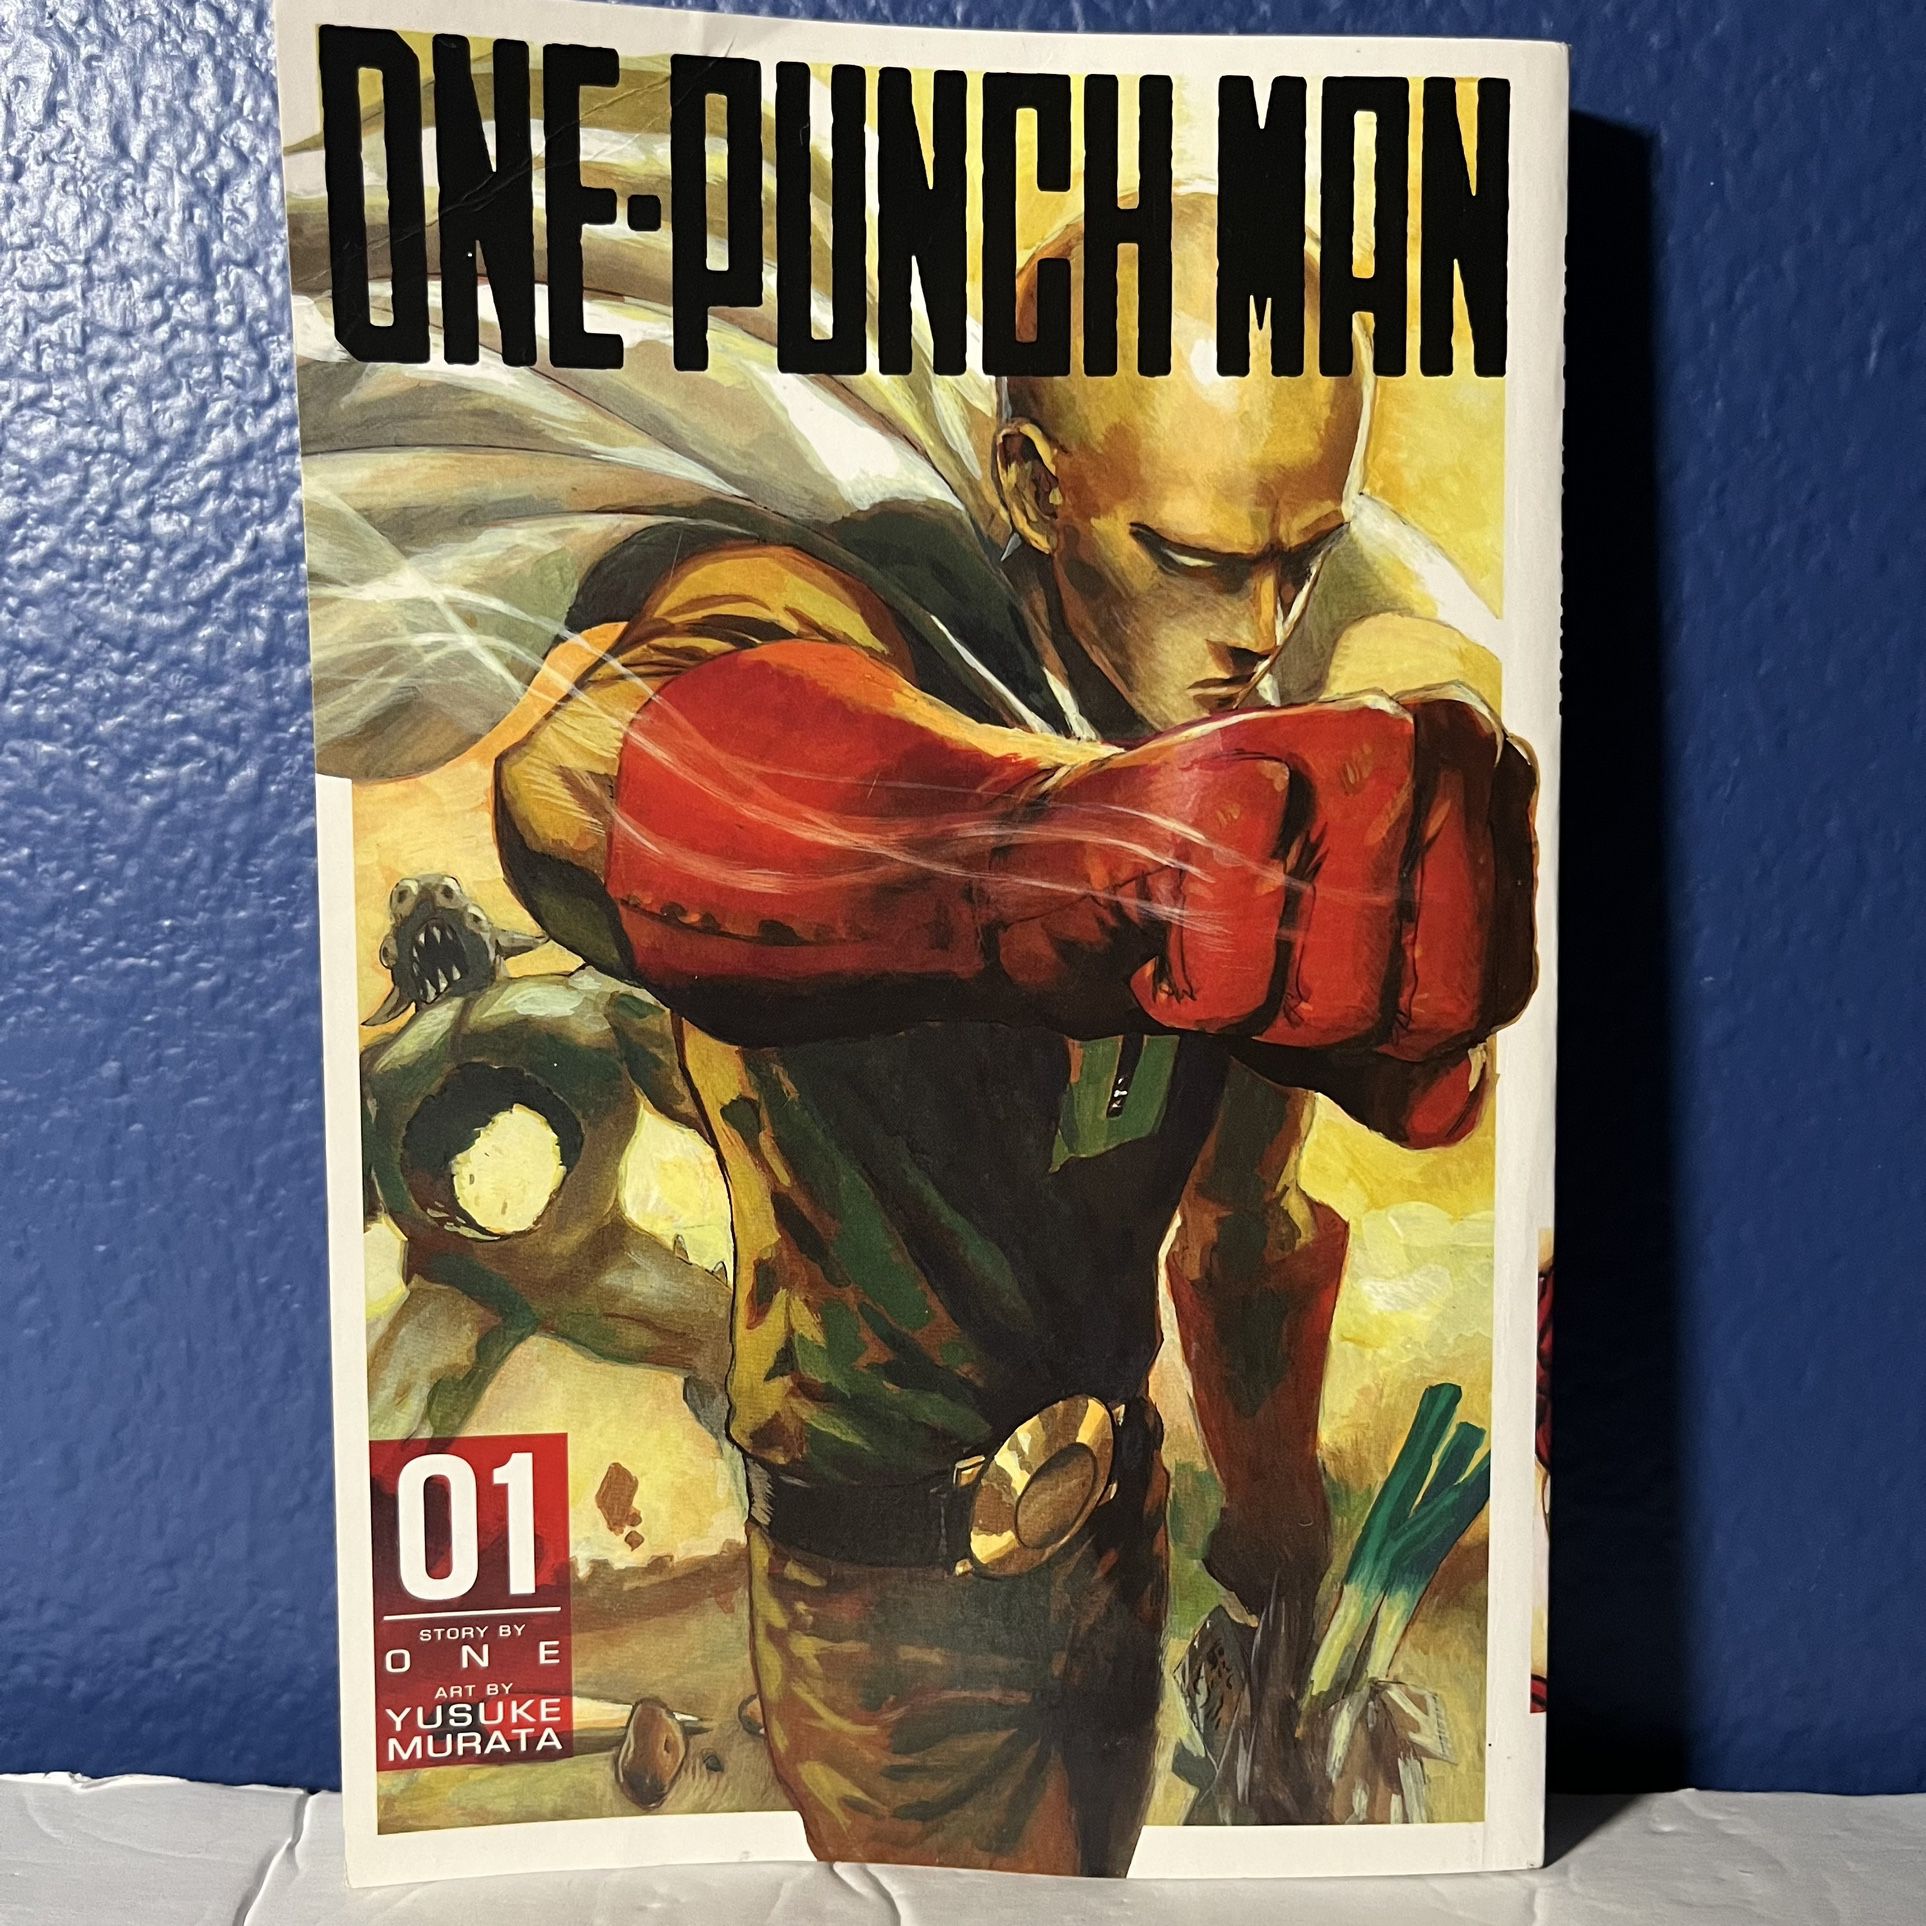 One Punch Man Vol. 1 Manga - Paperback – September 1, 2015